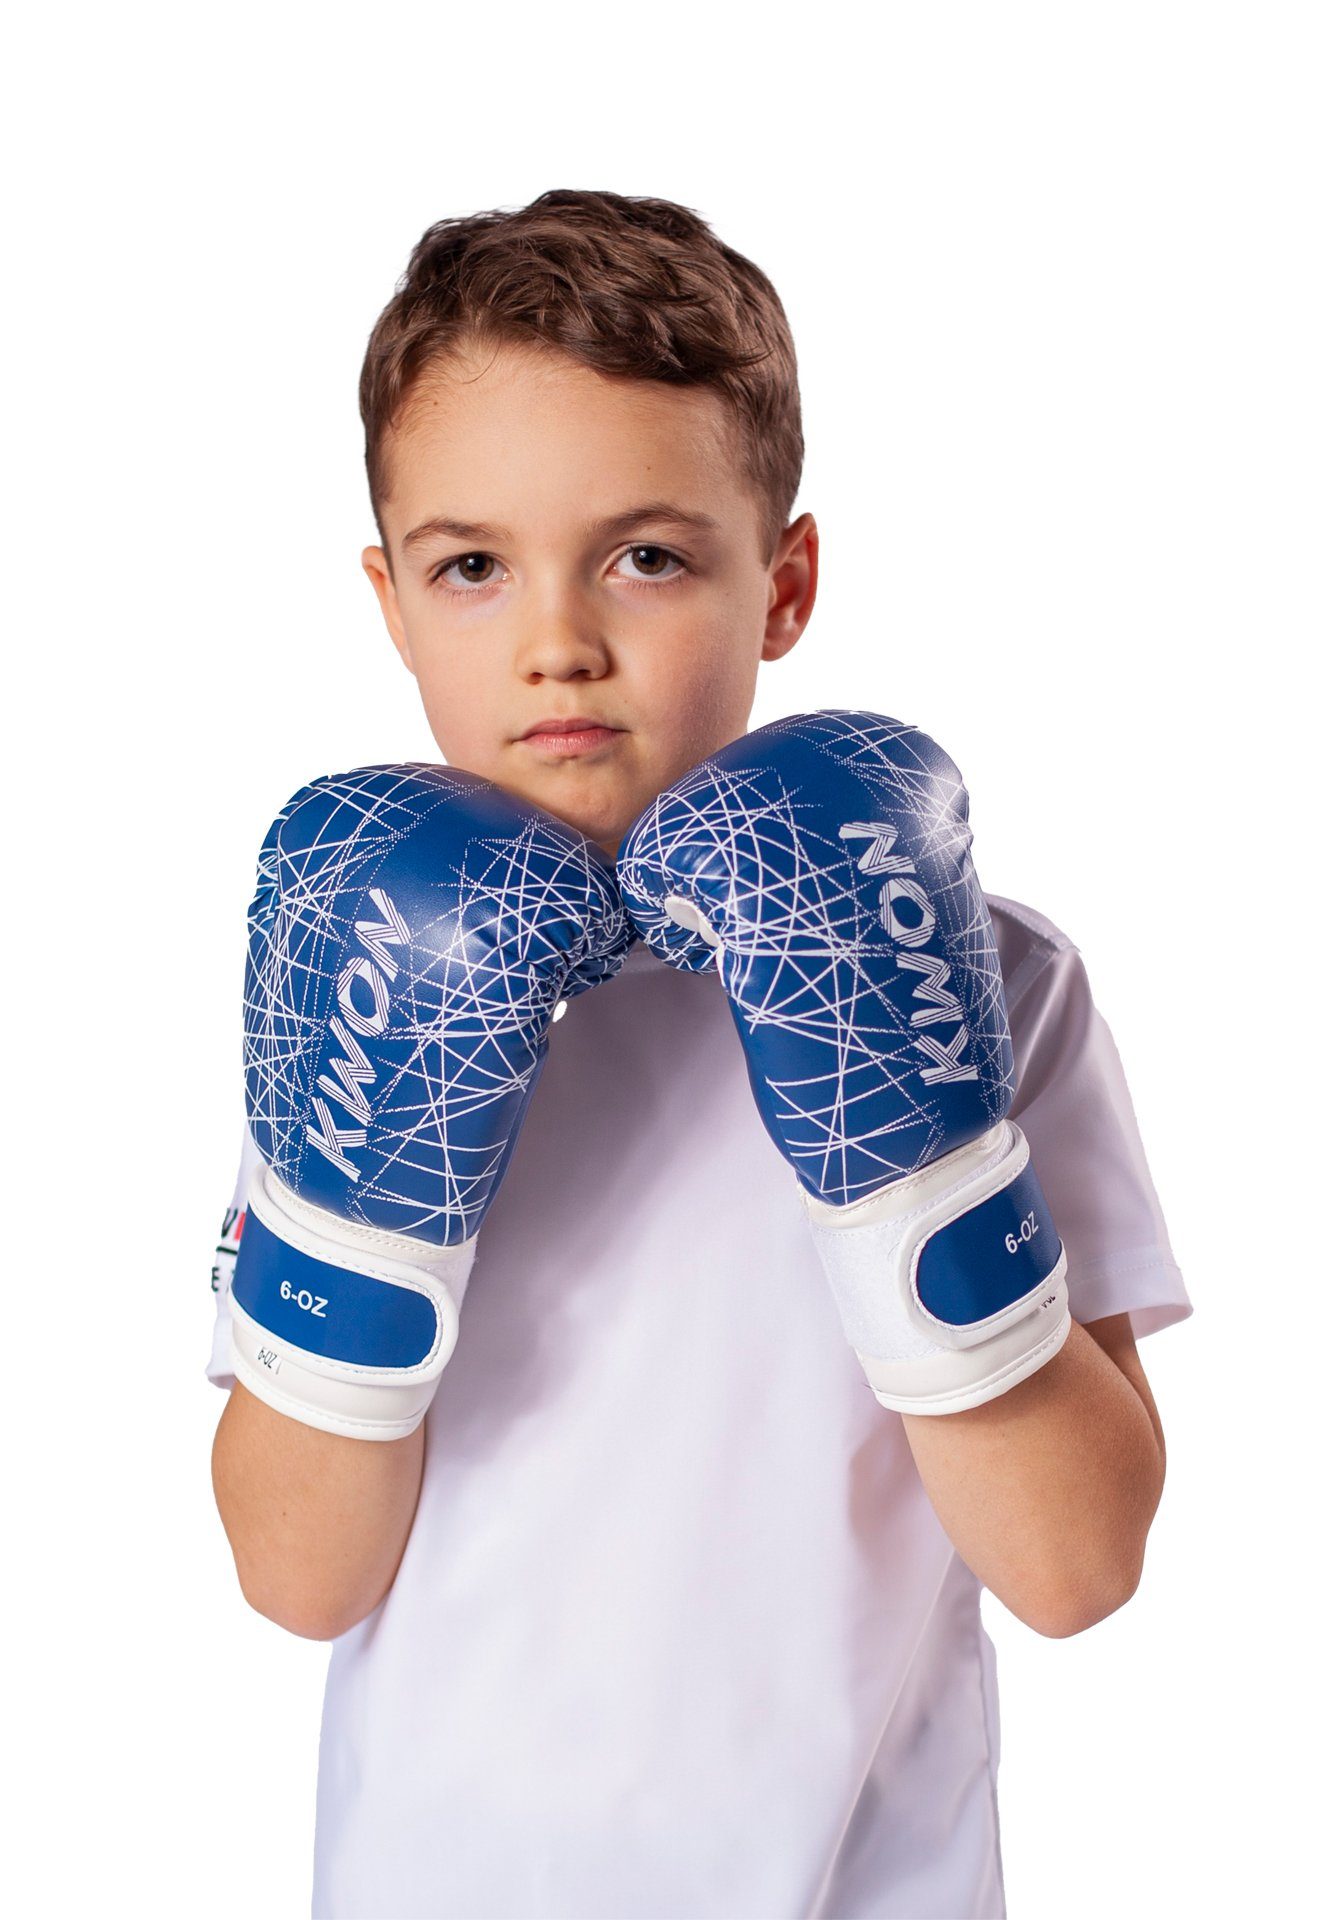 MMA Boxen Box-Handschuhe Kinder Kinderboxhandschuhe), Unzen, Kids KWON blau 6 Boxhandschuhe pink Kickboxen Qualität neon klein, (small hochwertige